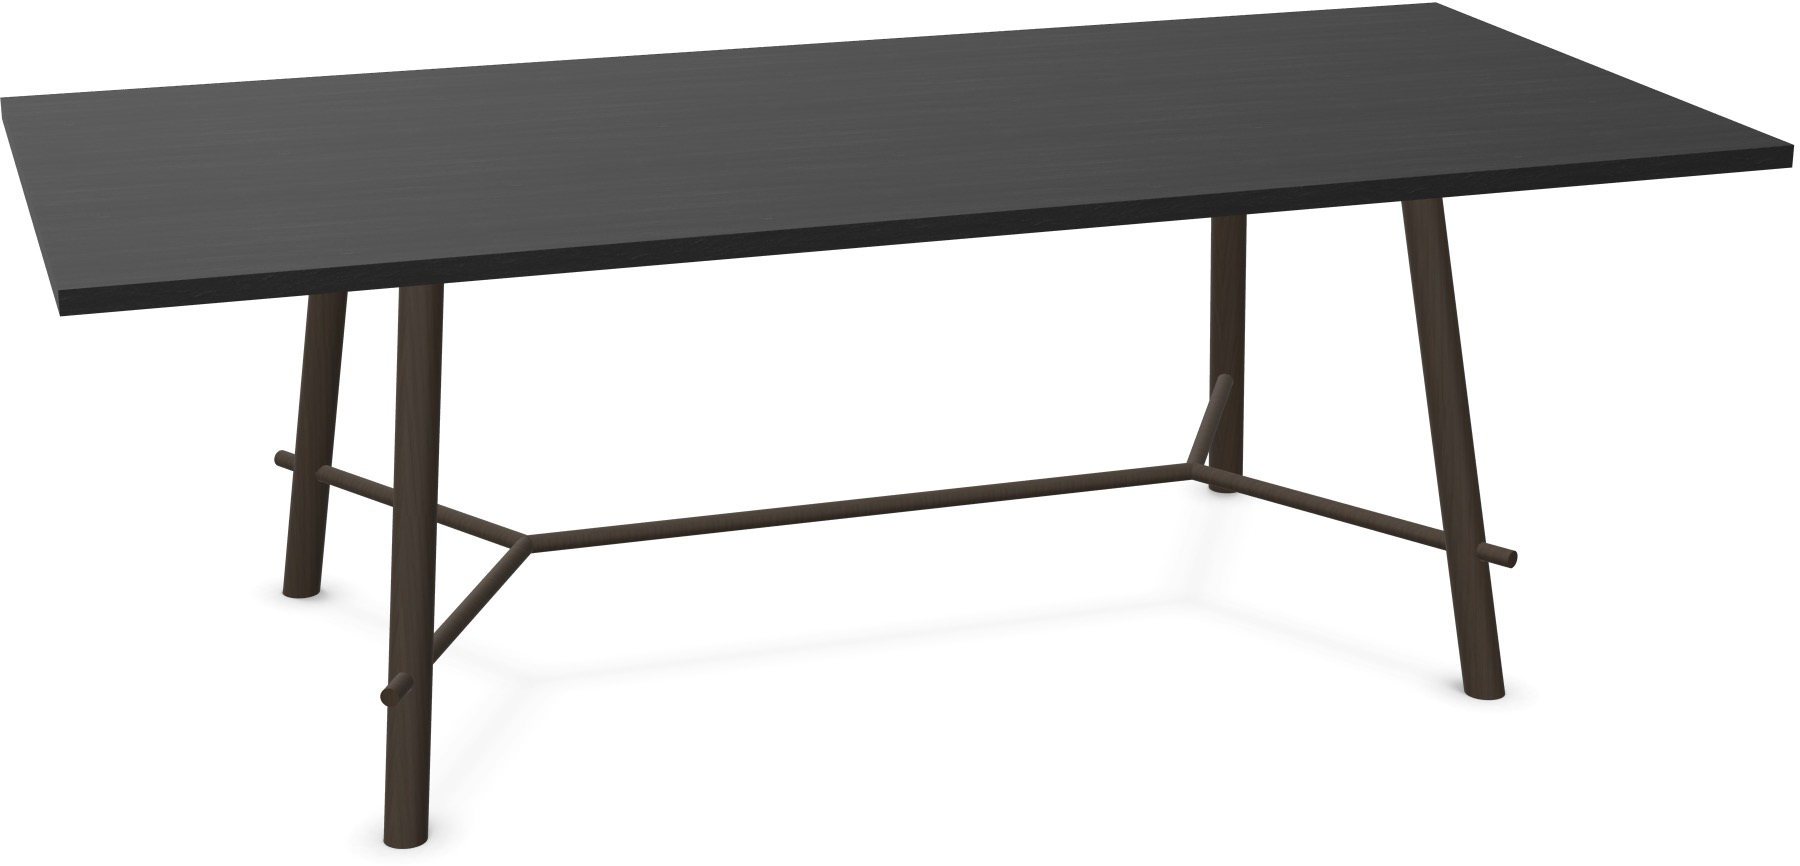 Record Living Maxi Tisch in Eiche schwarz / Eiche schwarz präsentiert im Onlineshop von KAQTU Design AG. Esstisch ist von Infiniti Design